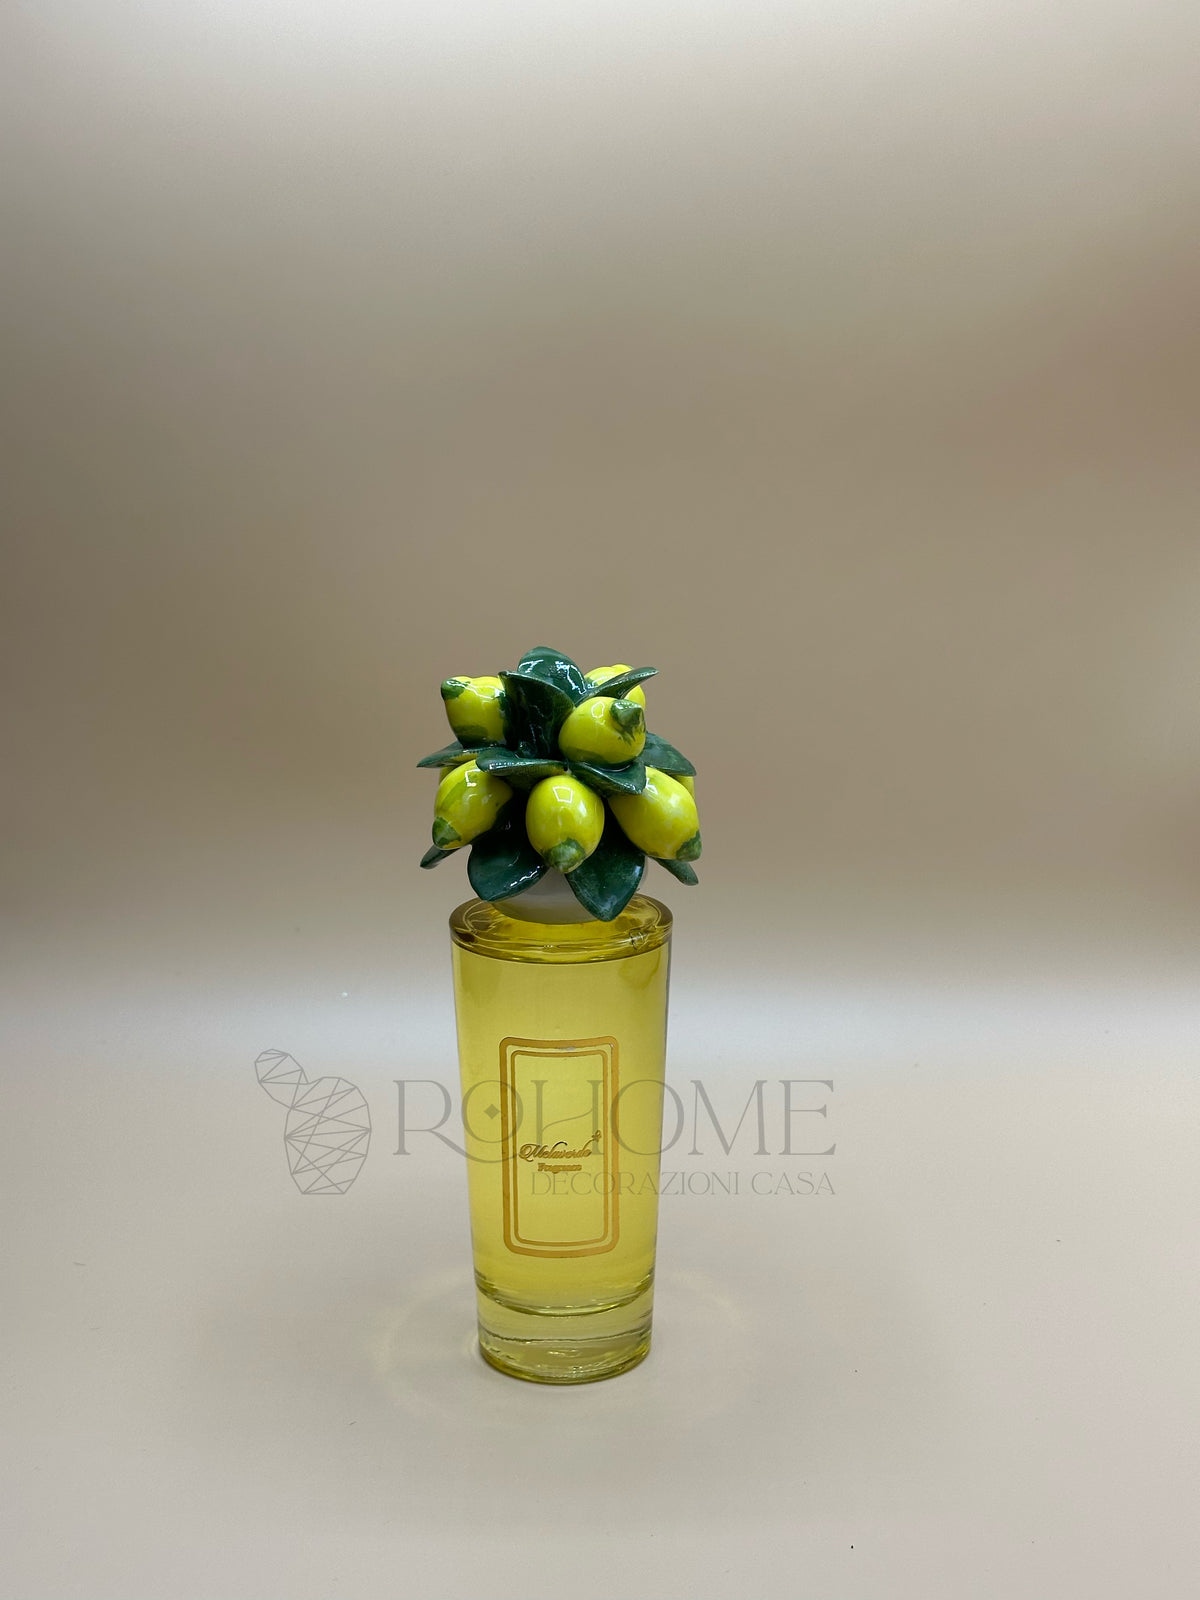 Melaverde - green lemon air freshener | rohome